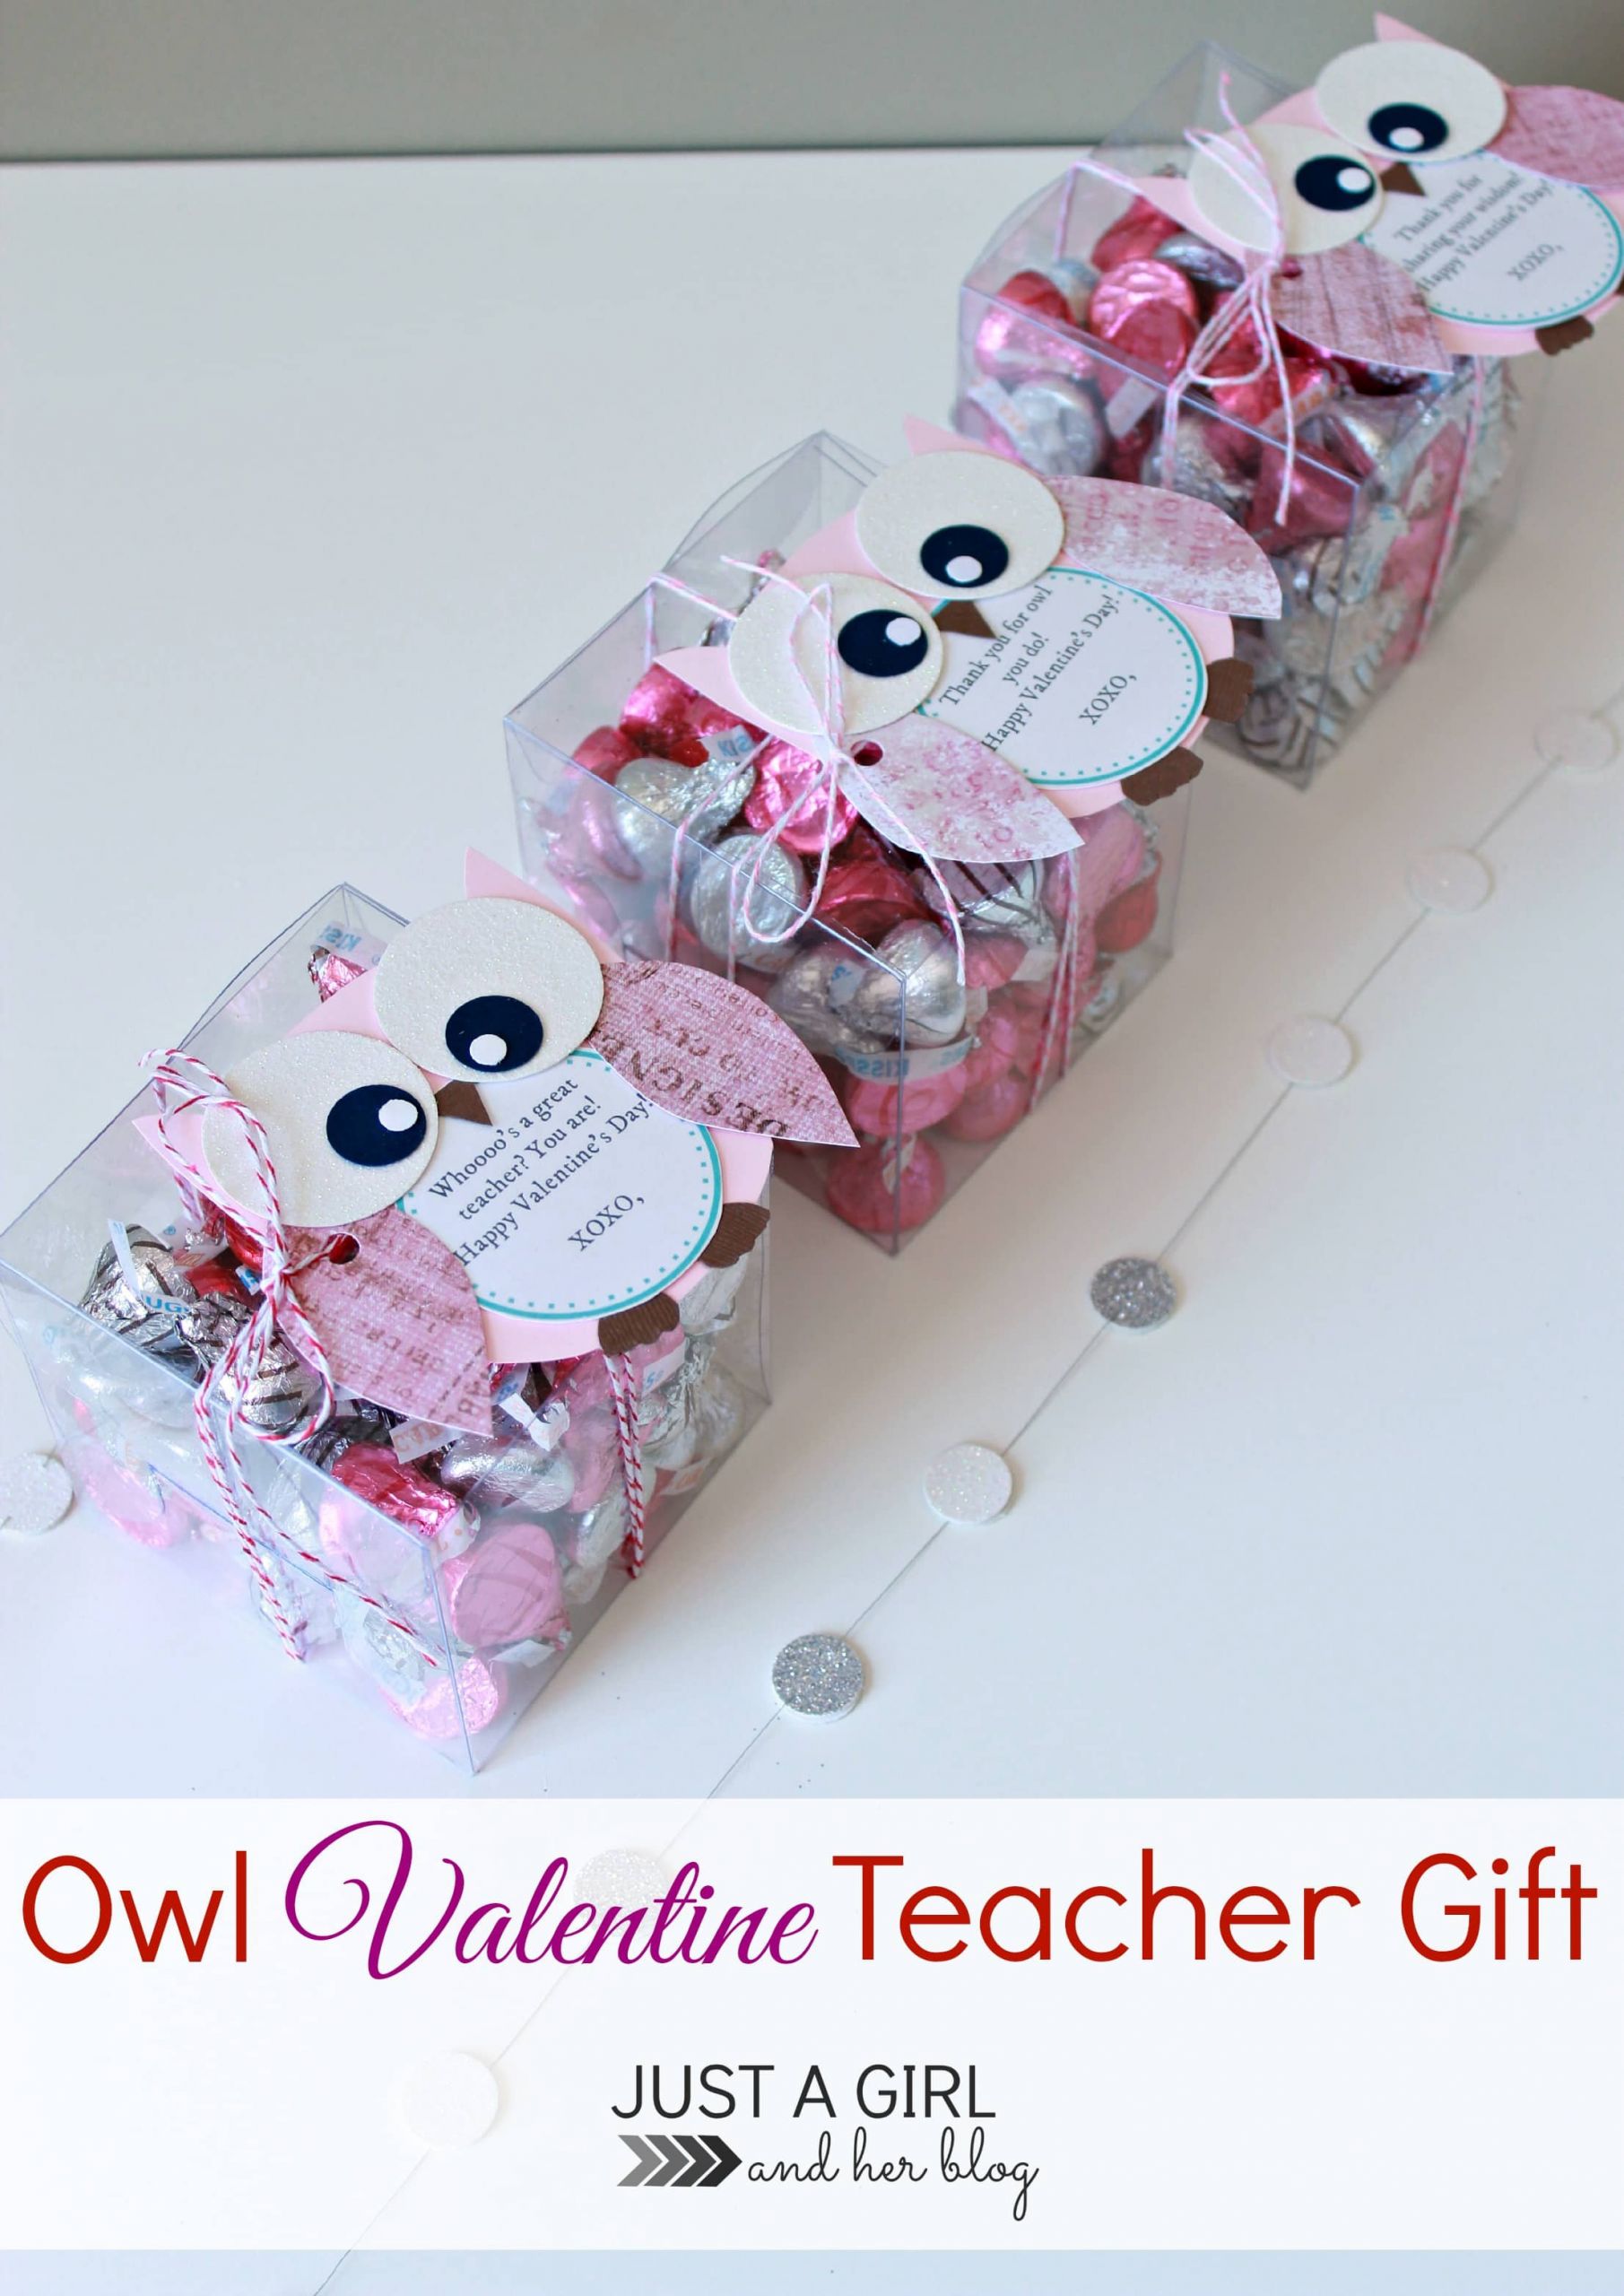 Valentine Teacher Gift Ideas
 Owl Valentine Teacher Gift